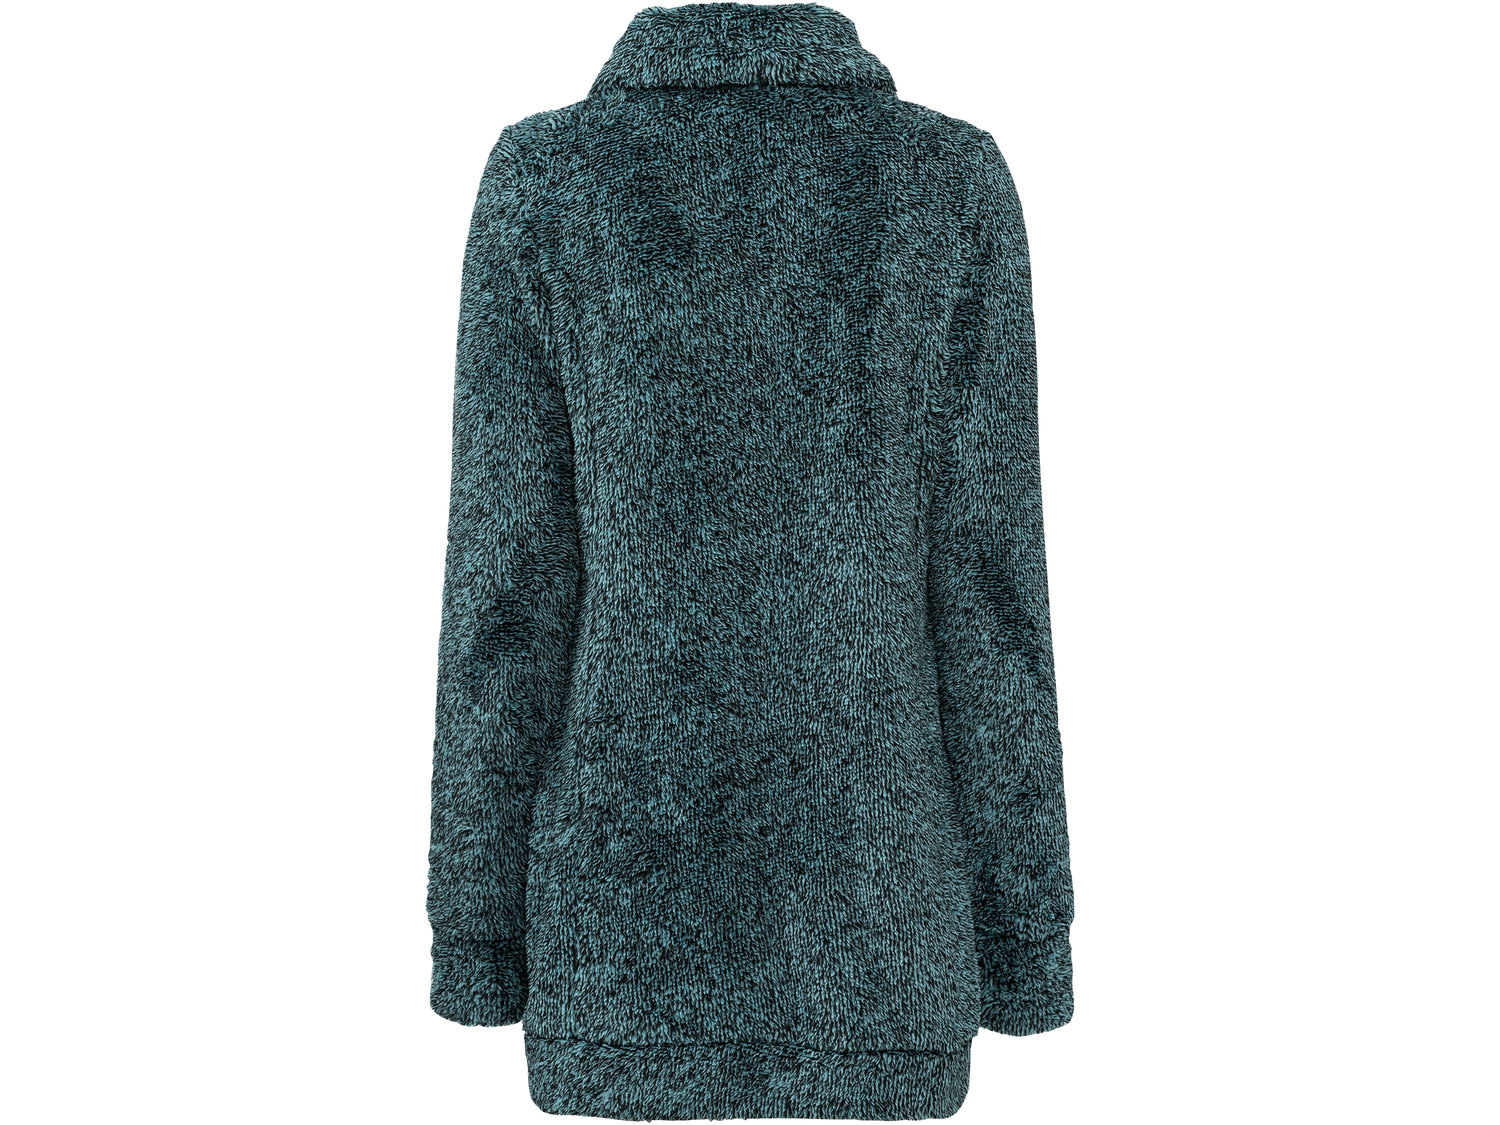 Bluza polarowa Esmara, cena 39,99 PLN 
- miękka i przyjemna w dotyku
- rozmiary: ...